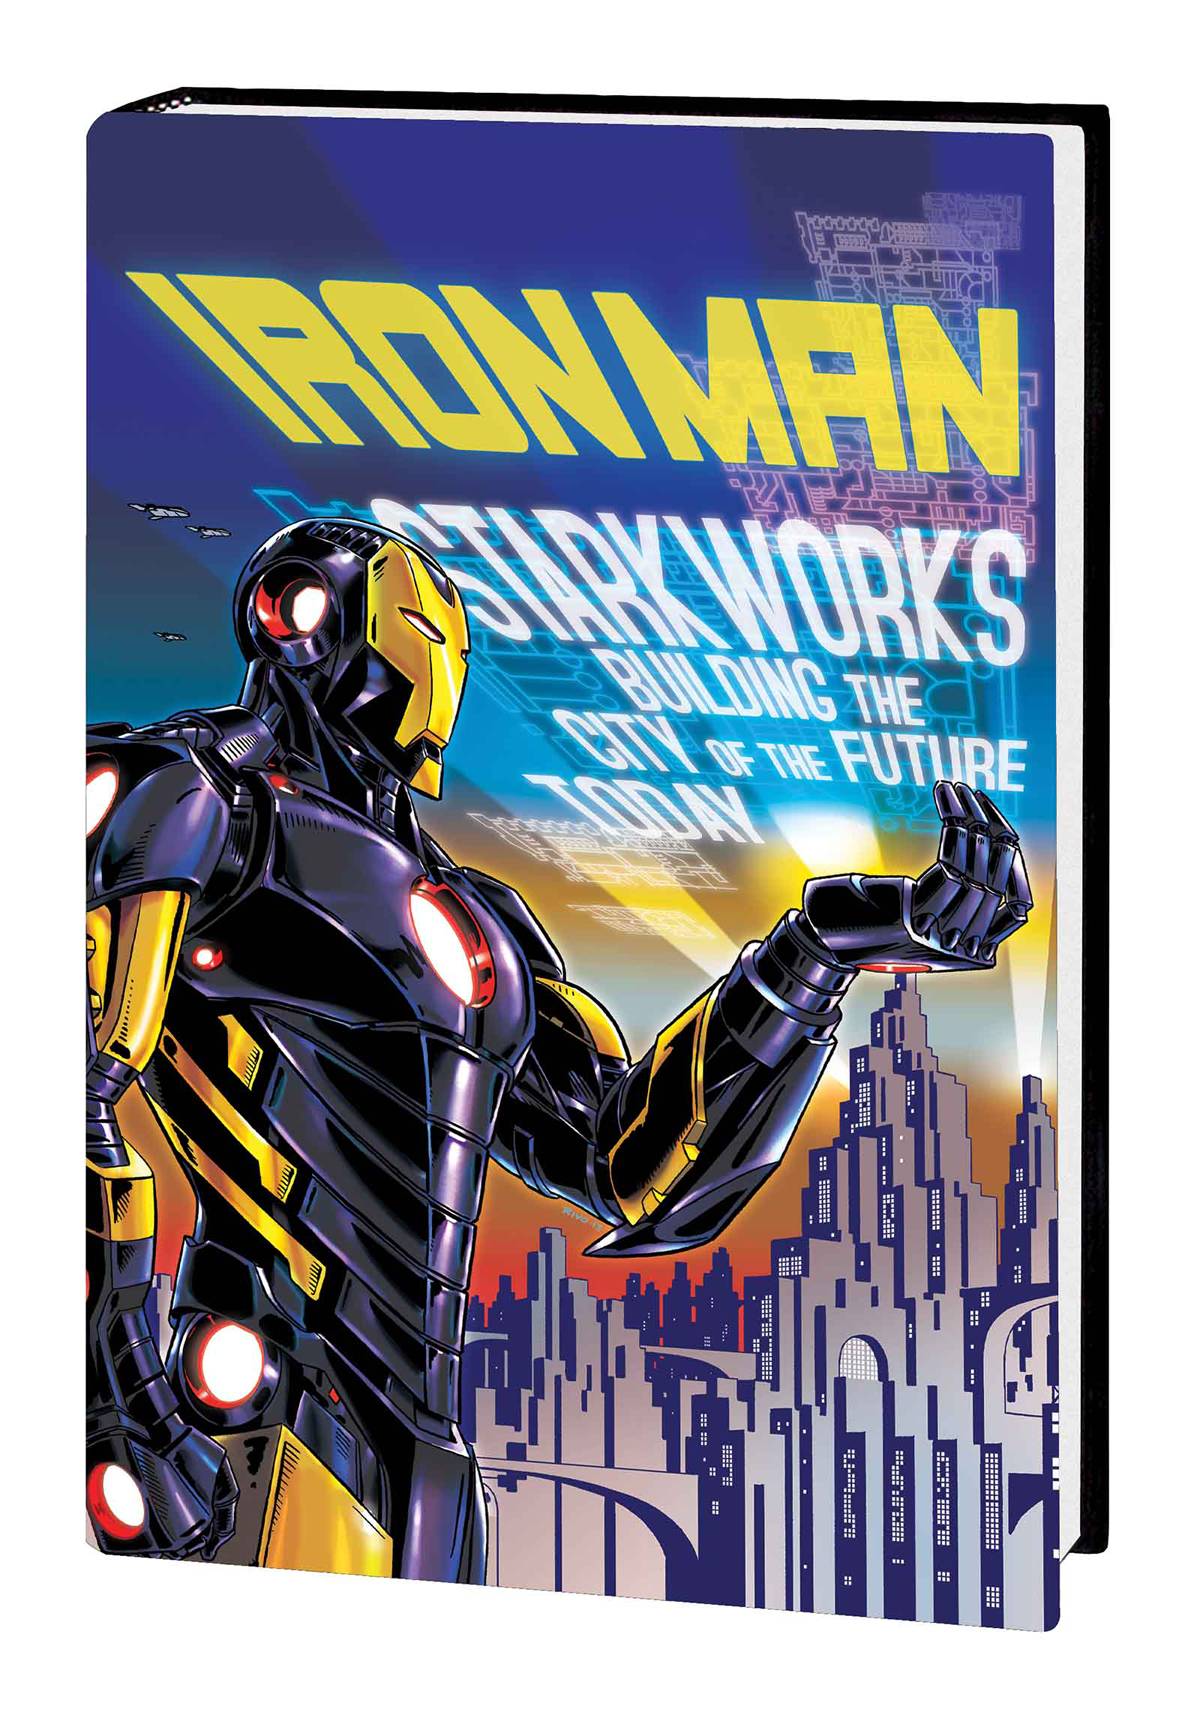 Iron Man Hardcover Volume 4 Iron Metropolitan